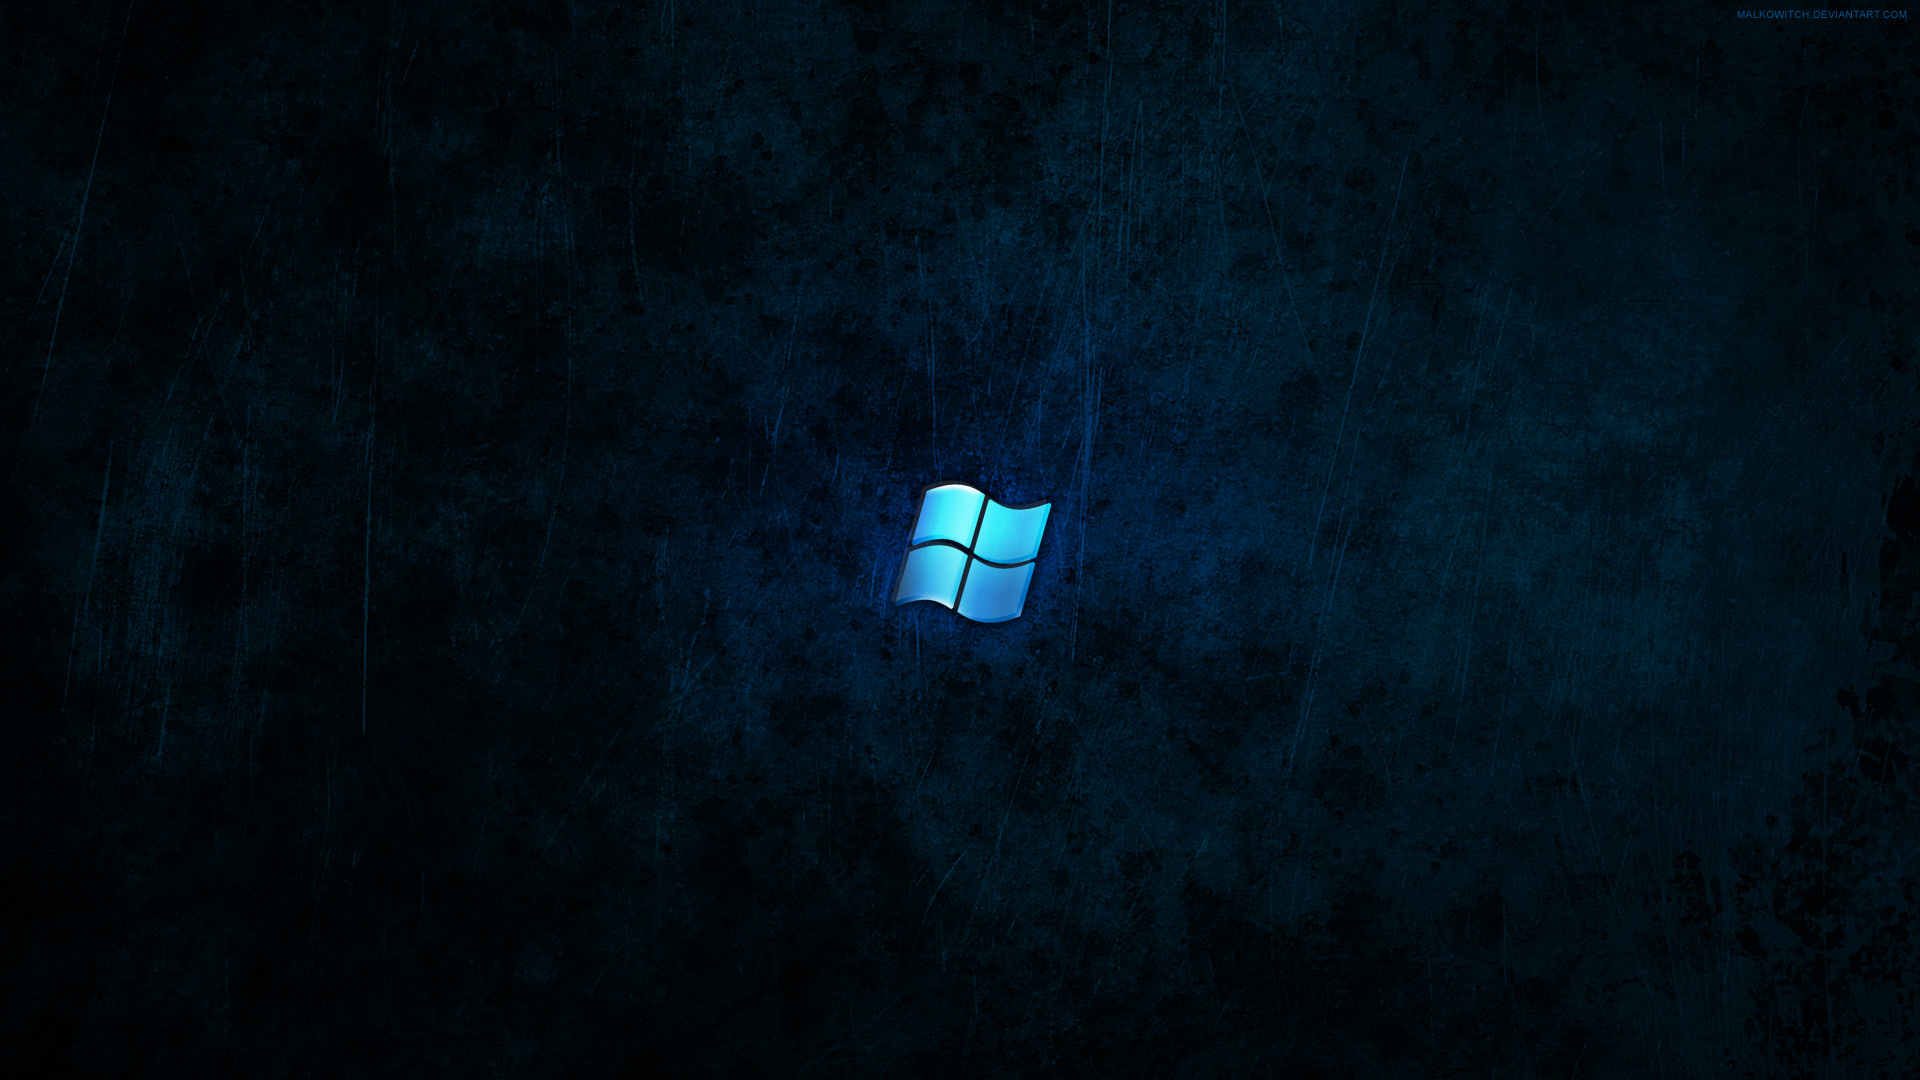 Windows Dark Blue Wallpaper By Malkowitch